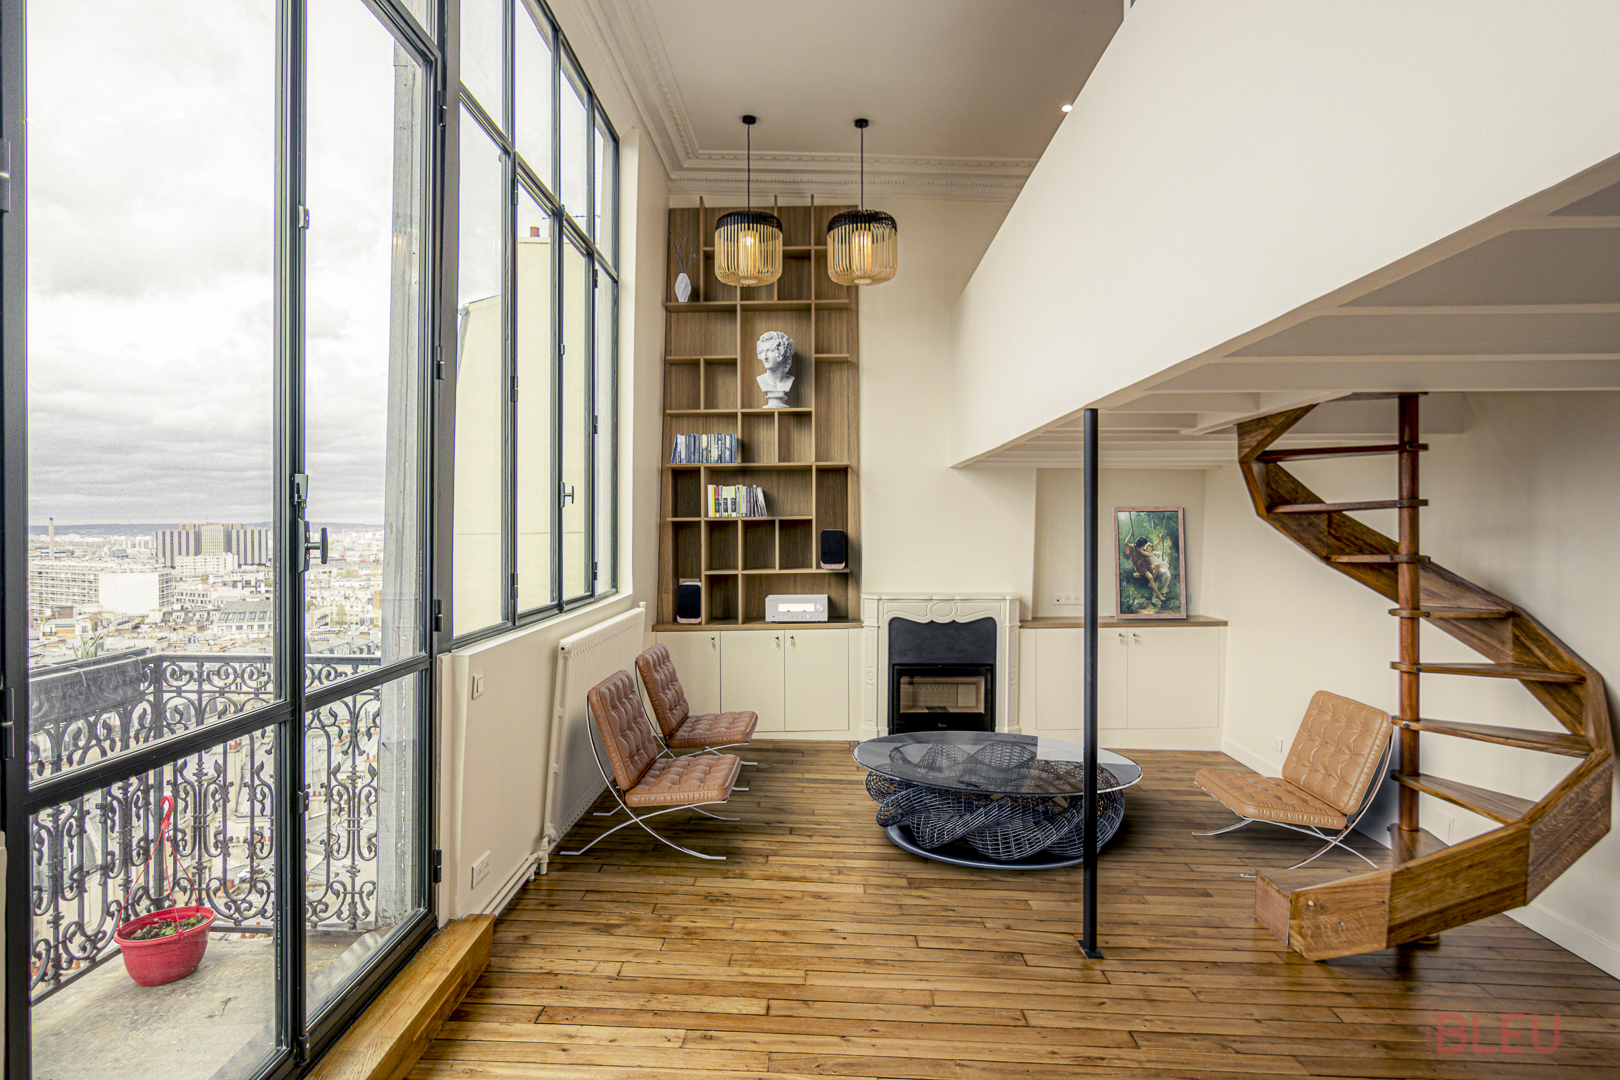 Salon lumineux et moderne dans un loft haussmannien à Paris avec grandes fenêtres, parquet en bois clair, et mobilier design.